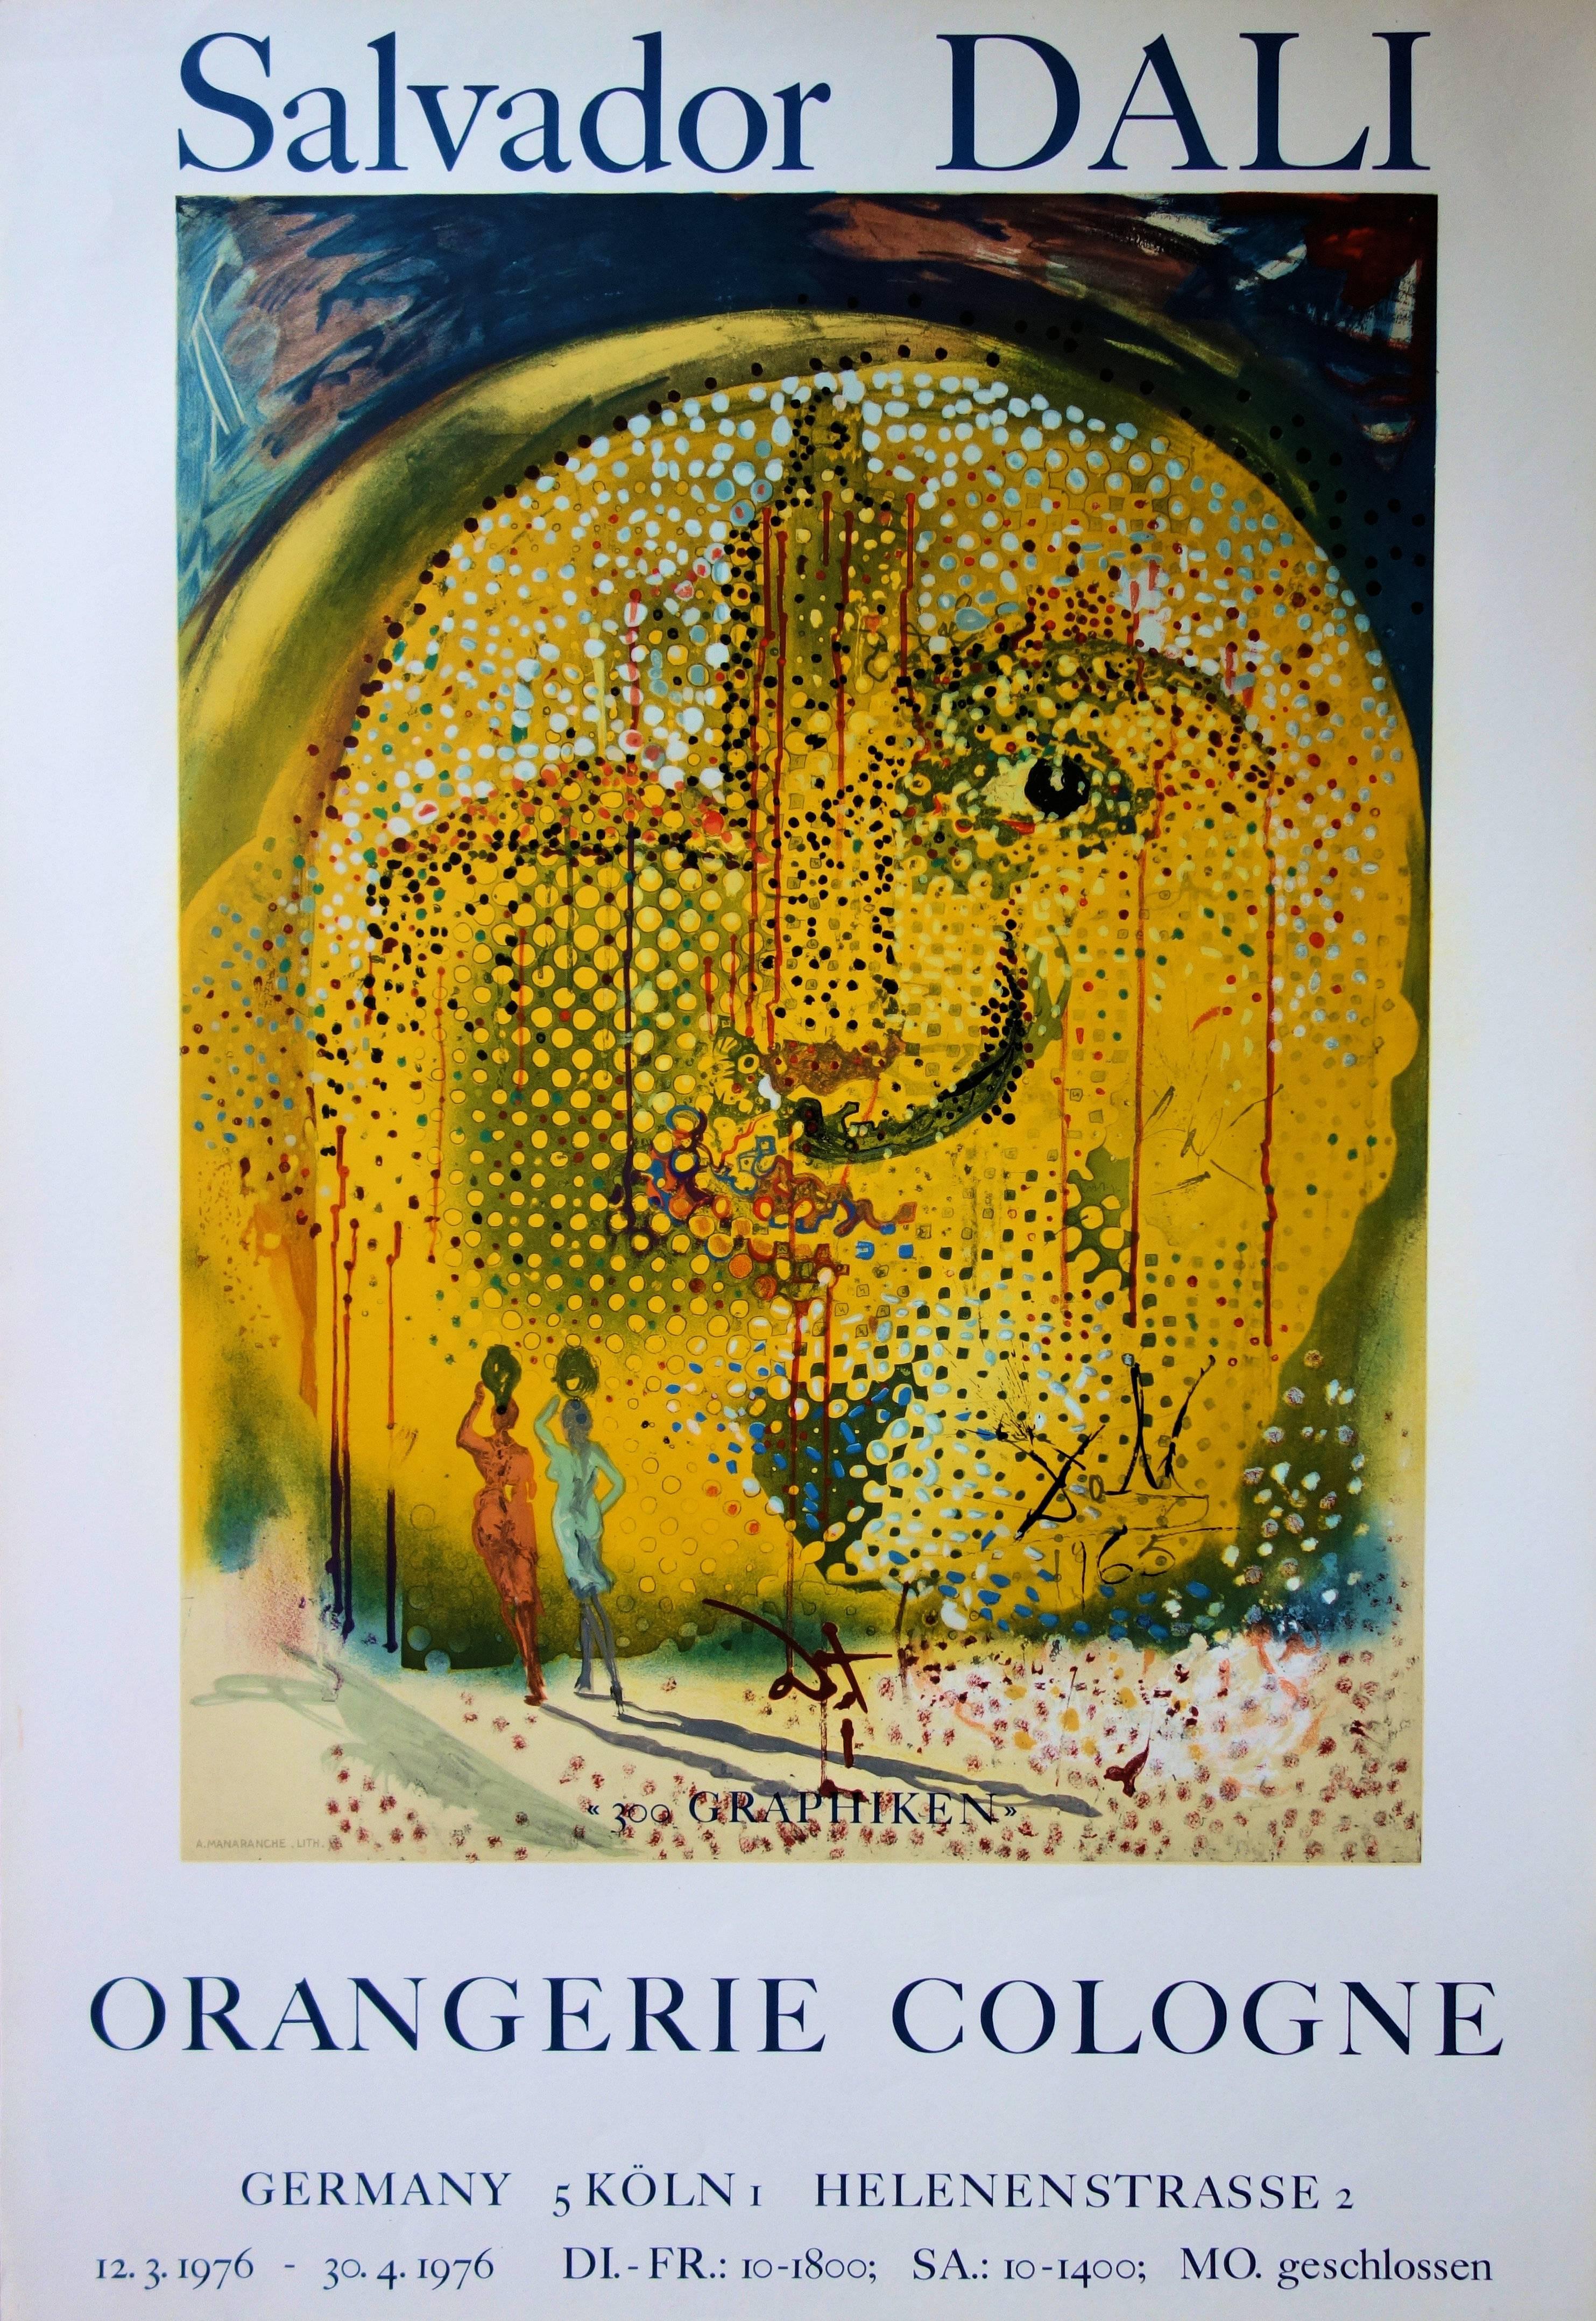 Rare affiche lithographique vintage rare de Sol y Dali, Mourlot 1967 (feuille n° 67-1)